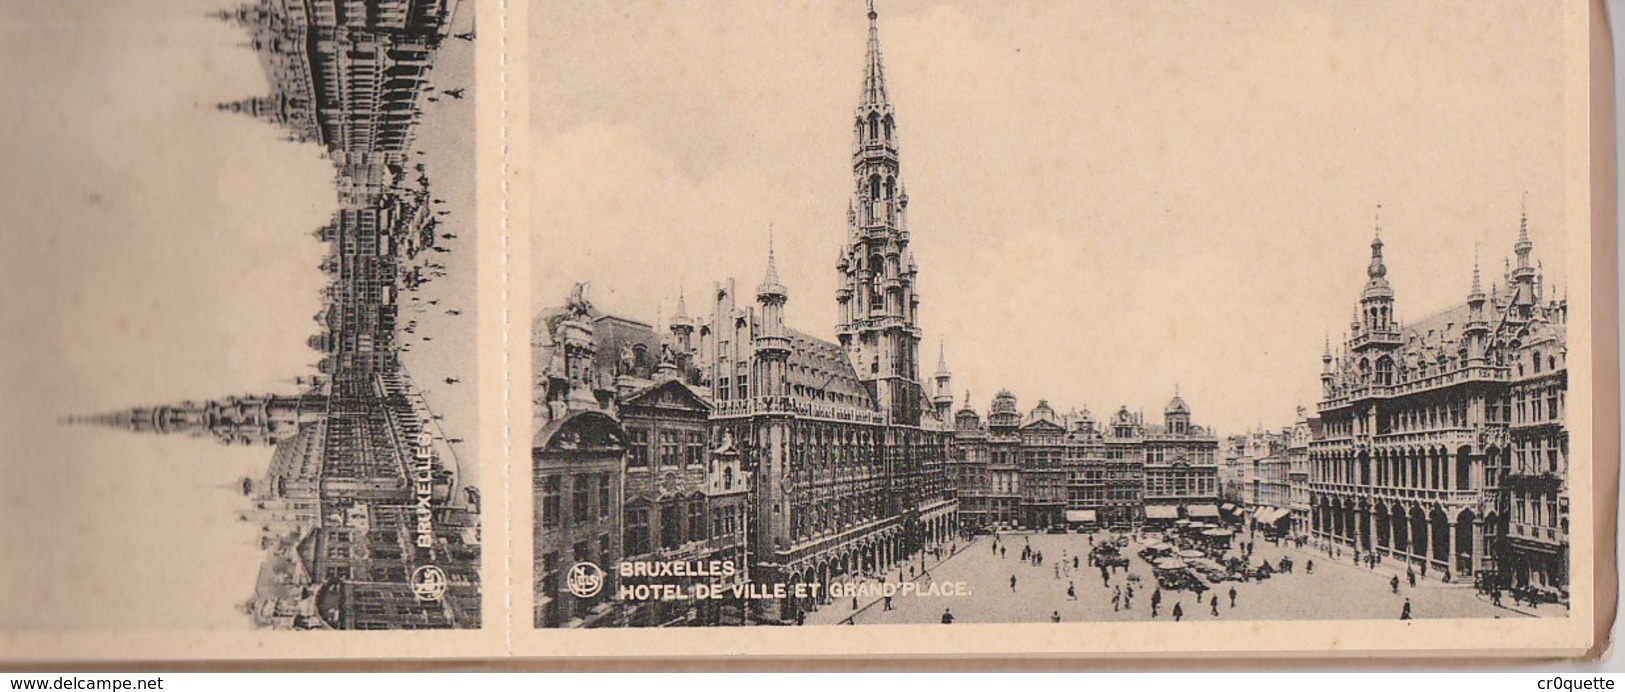 BELGIQUE BRUXELLES BRUSSELS - LOT DE 12 VIEILLES CARTES POSTALES  Vers 1920 - Lots, Séries, Collections